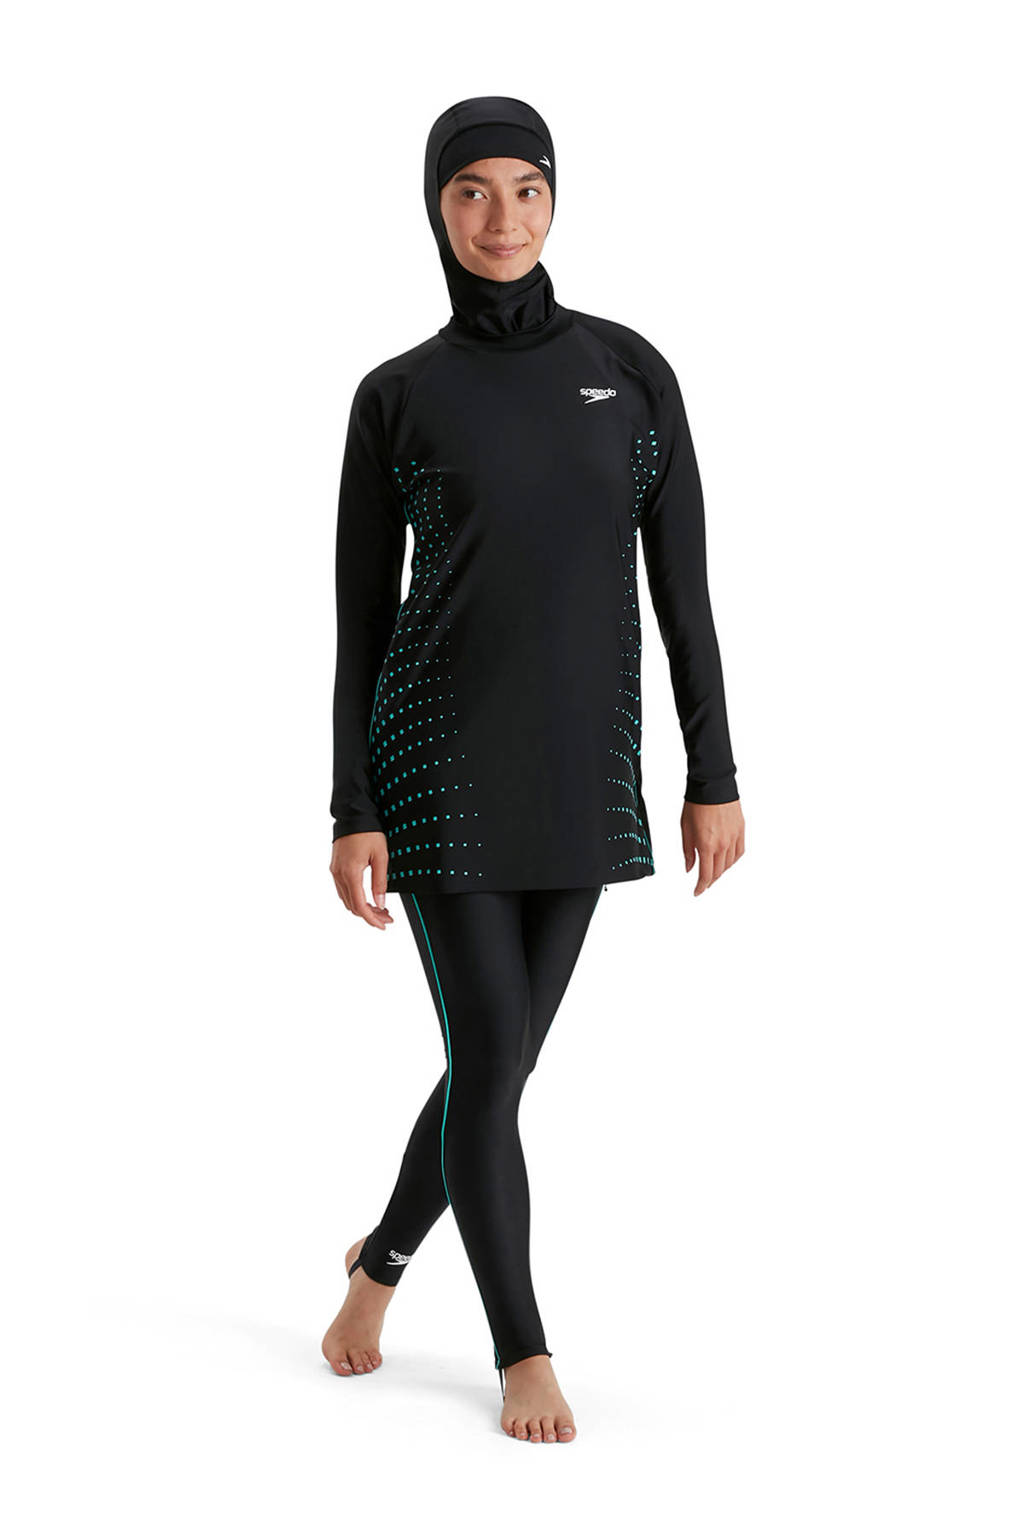 Speedo zwemtuniek met legging en hijab zwart